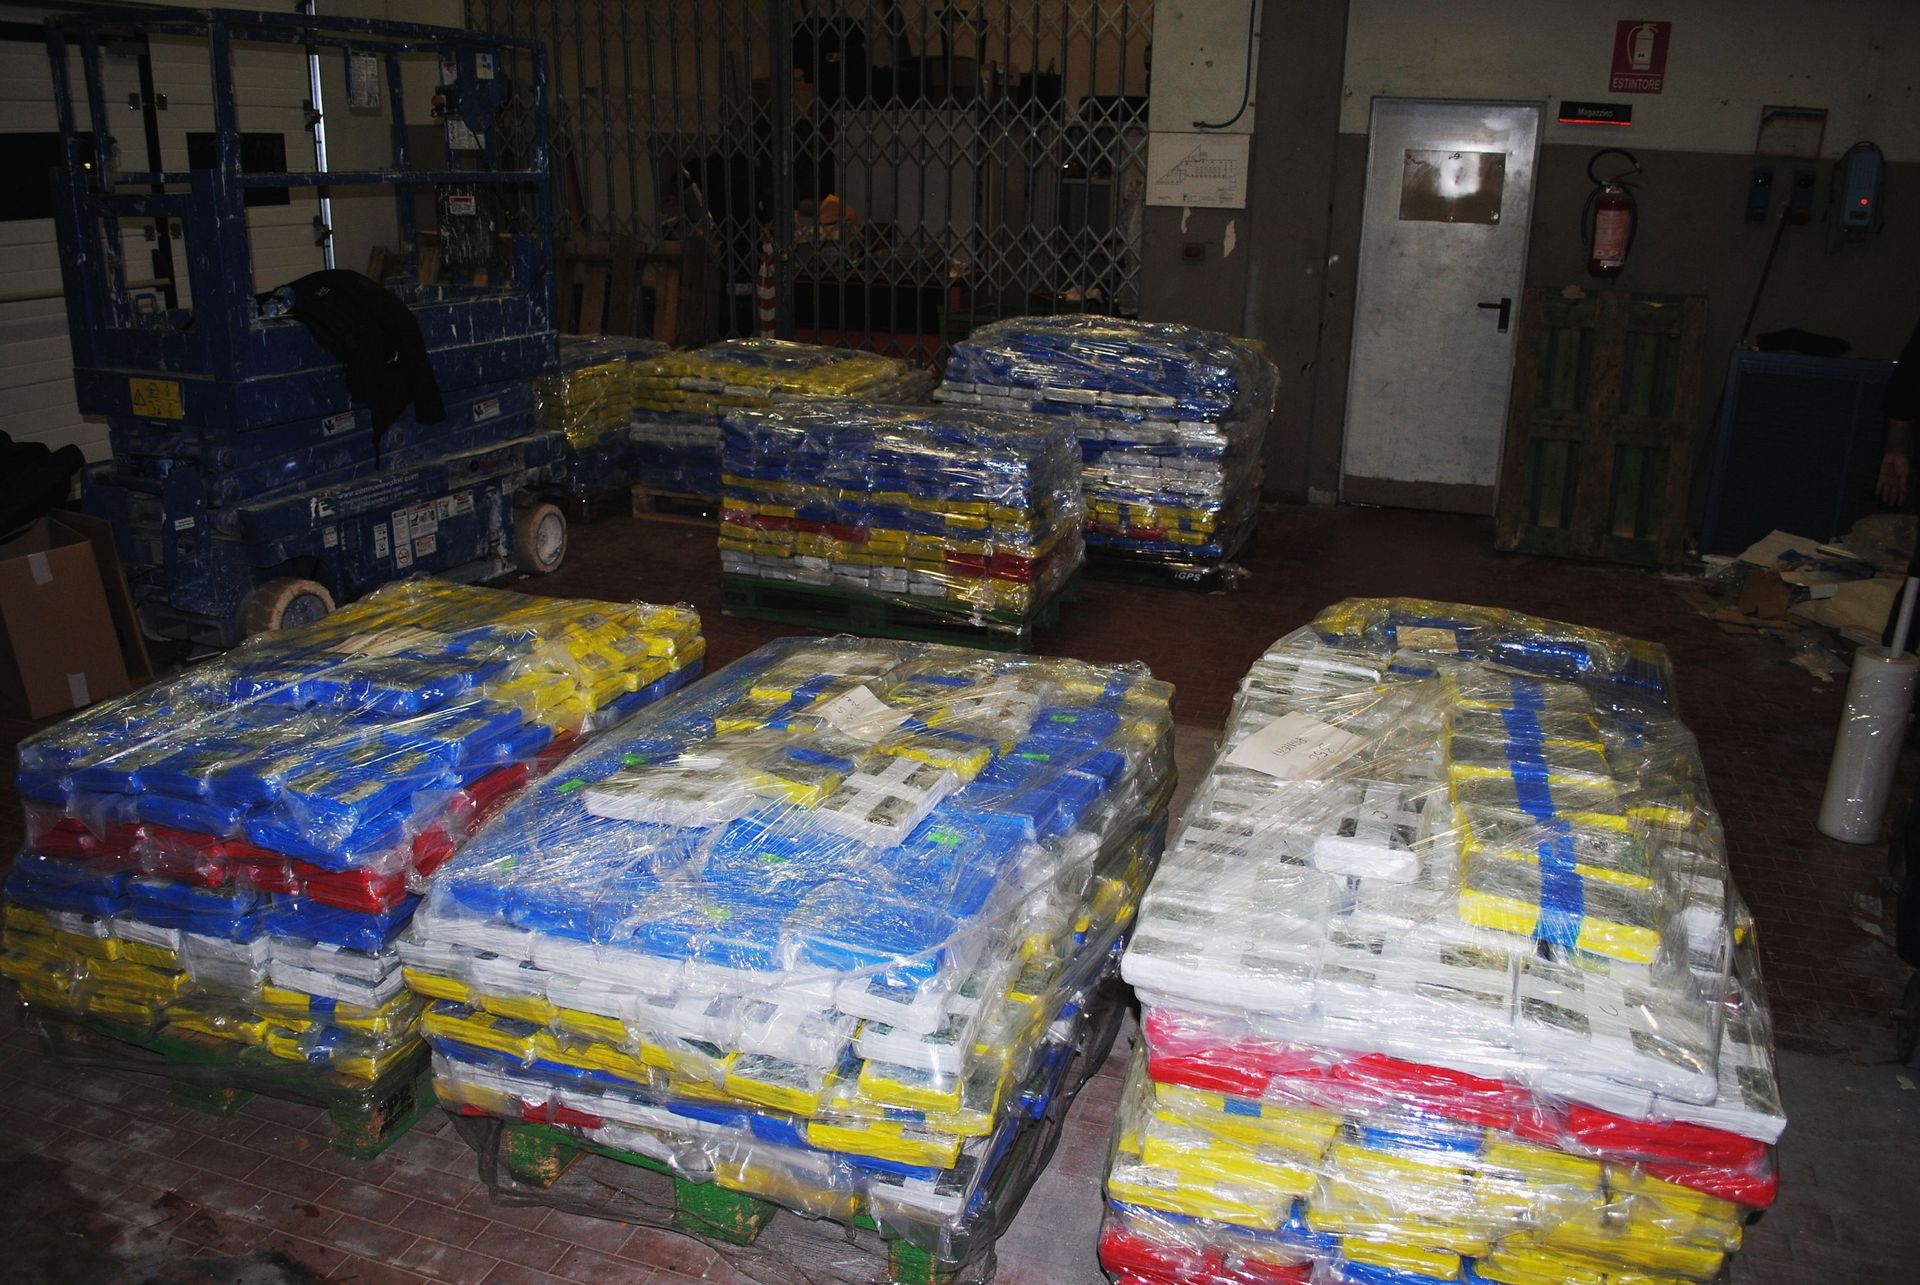 En février 2020, saisie de 3 tonnes de cocaïne sur le port de Livourne, en Italie